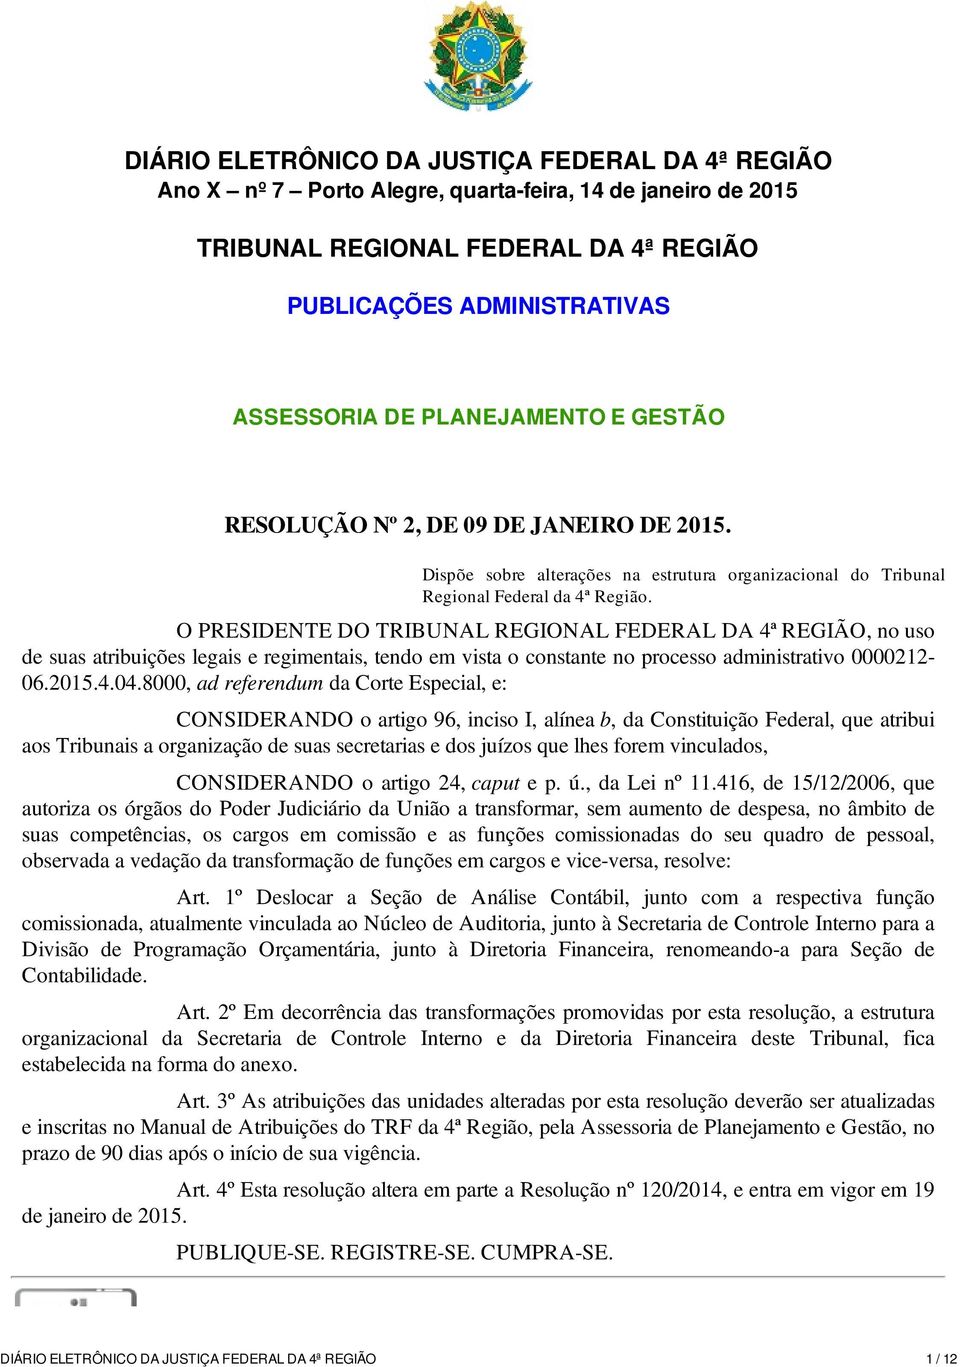 O PRESIDENTE DO TRIBUNAL REGIONAL FEDERAL DA 4ª REGIÃO, no uso de suas atribuições legais e regimentais, tendo em vista o constante no processo administrativo 0000212-06.2015.4.04.